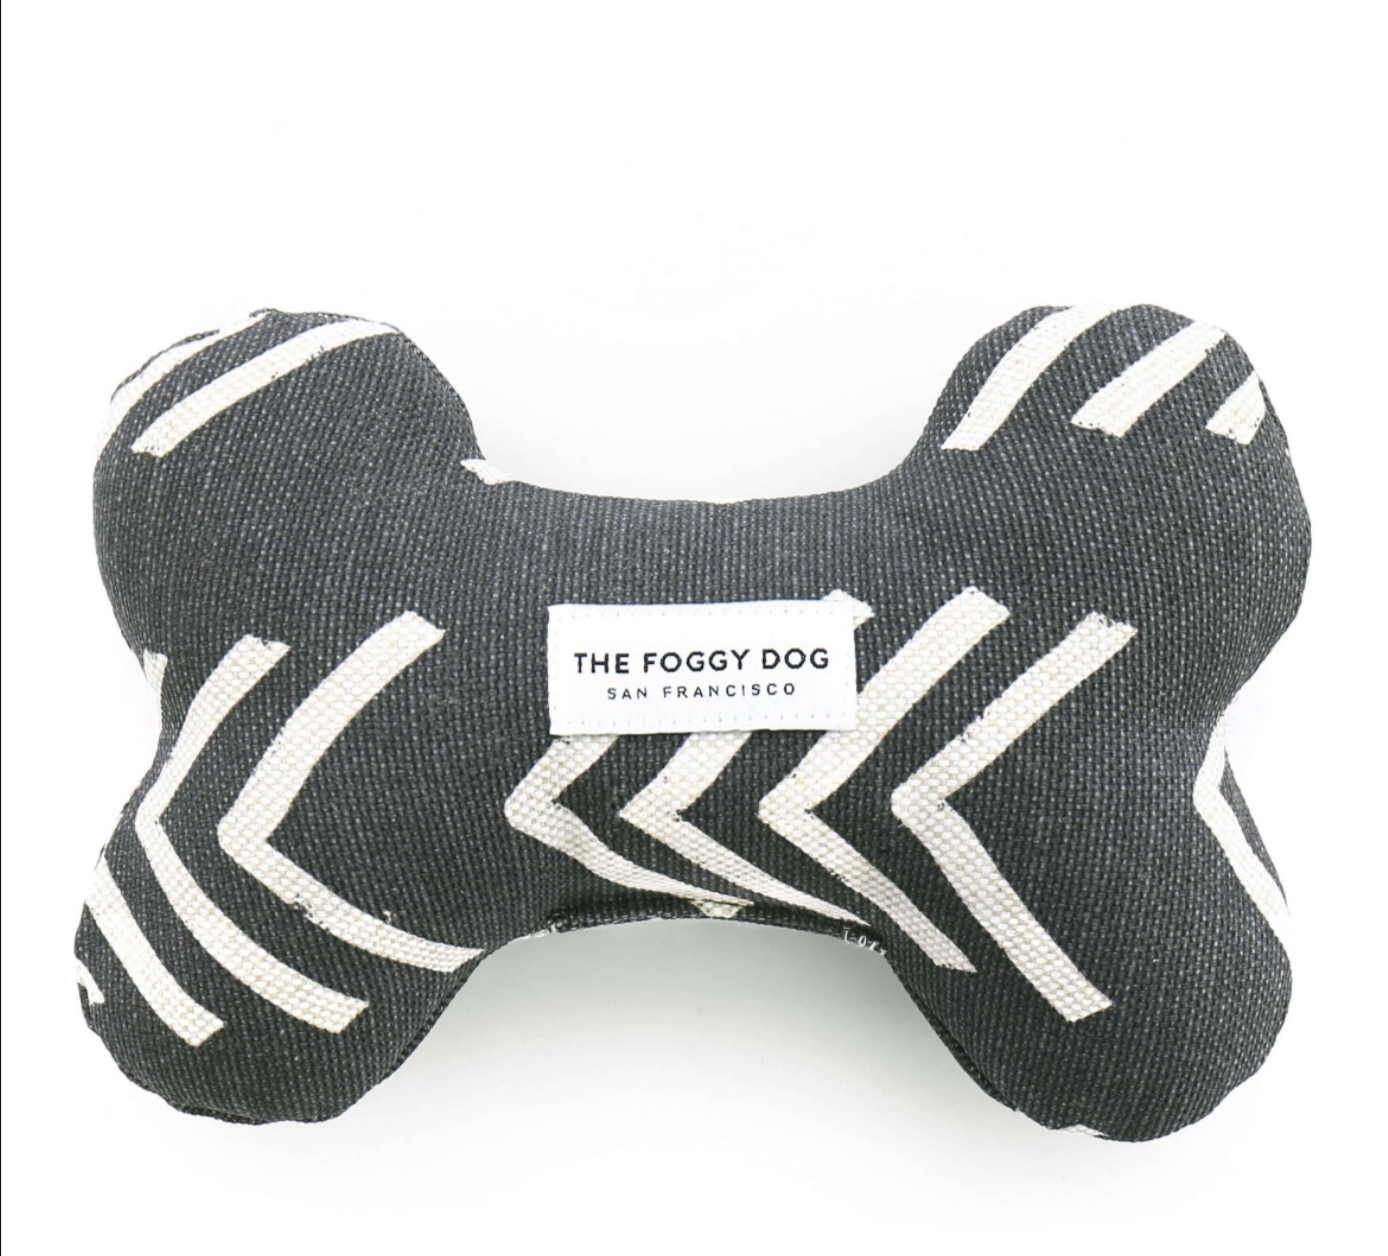 The Foggy Dog Modern Mud Cloth Black Dog Bone Squeaky Toy